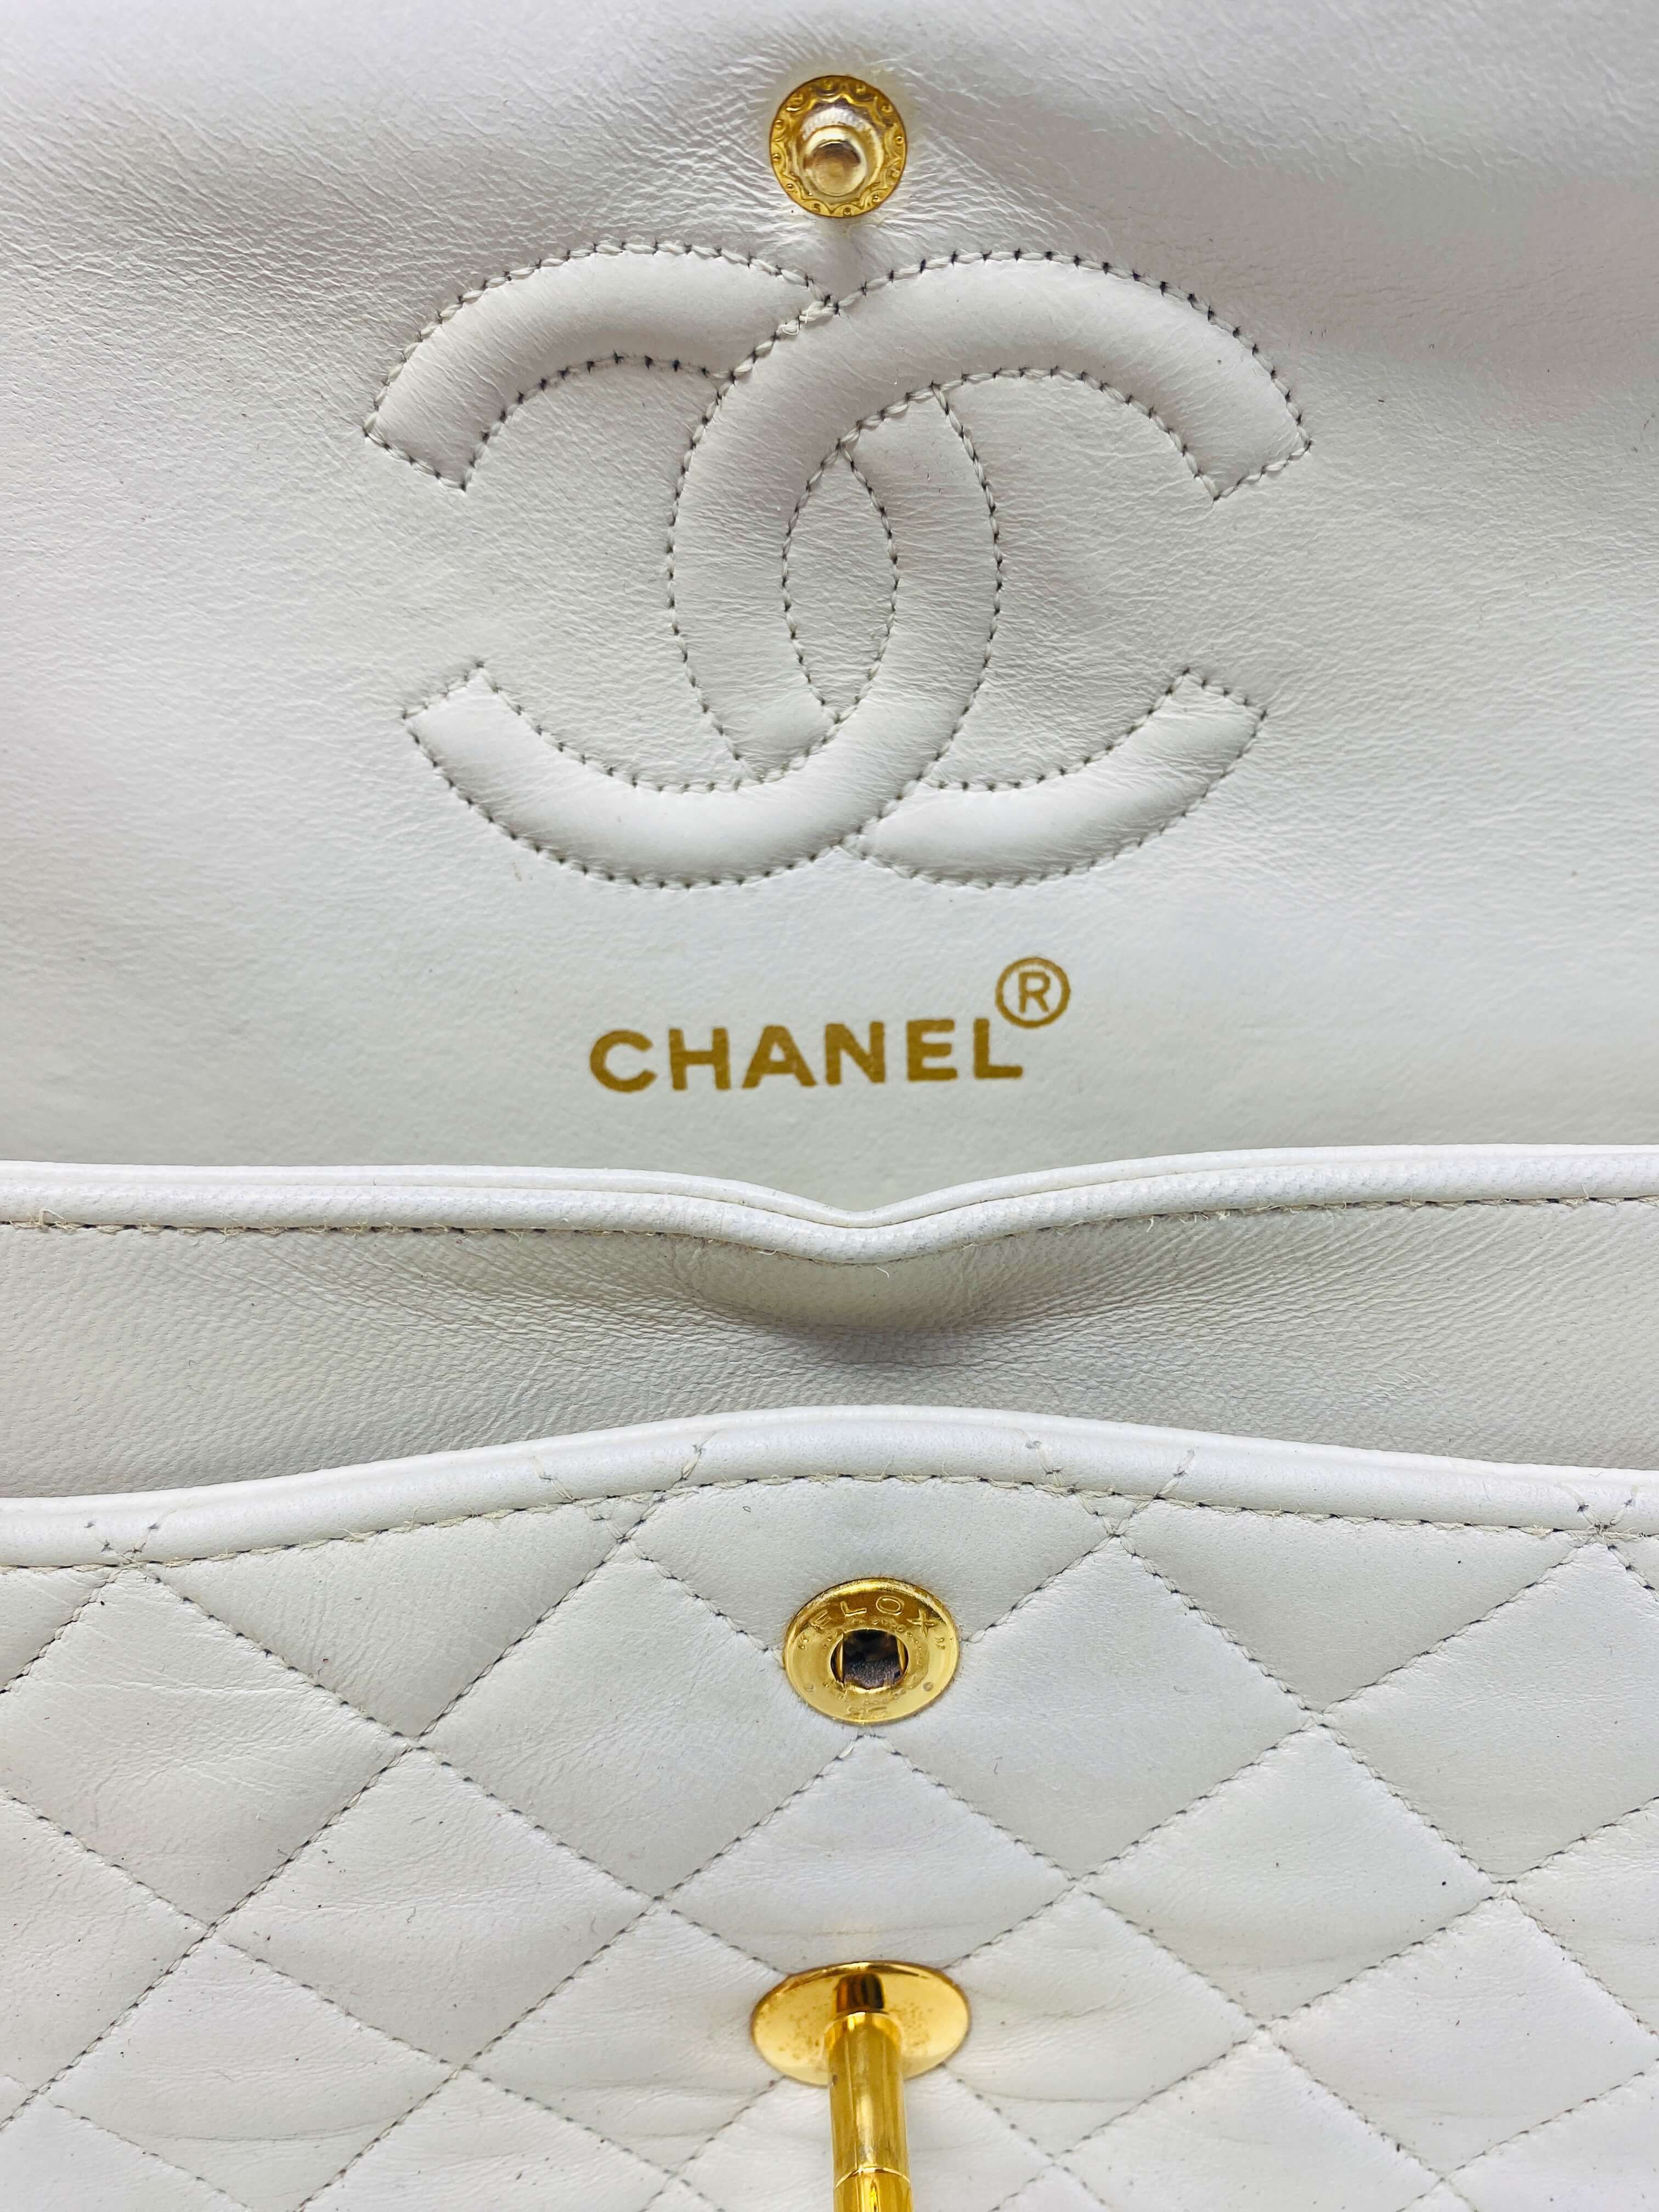 Chanel beige bag